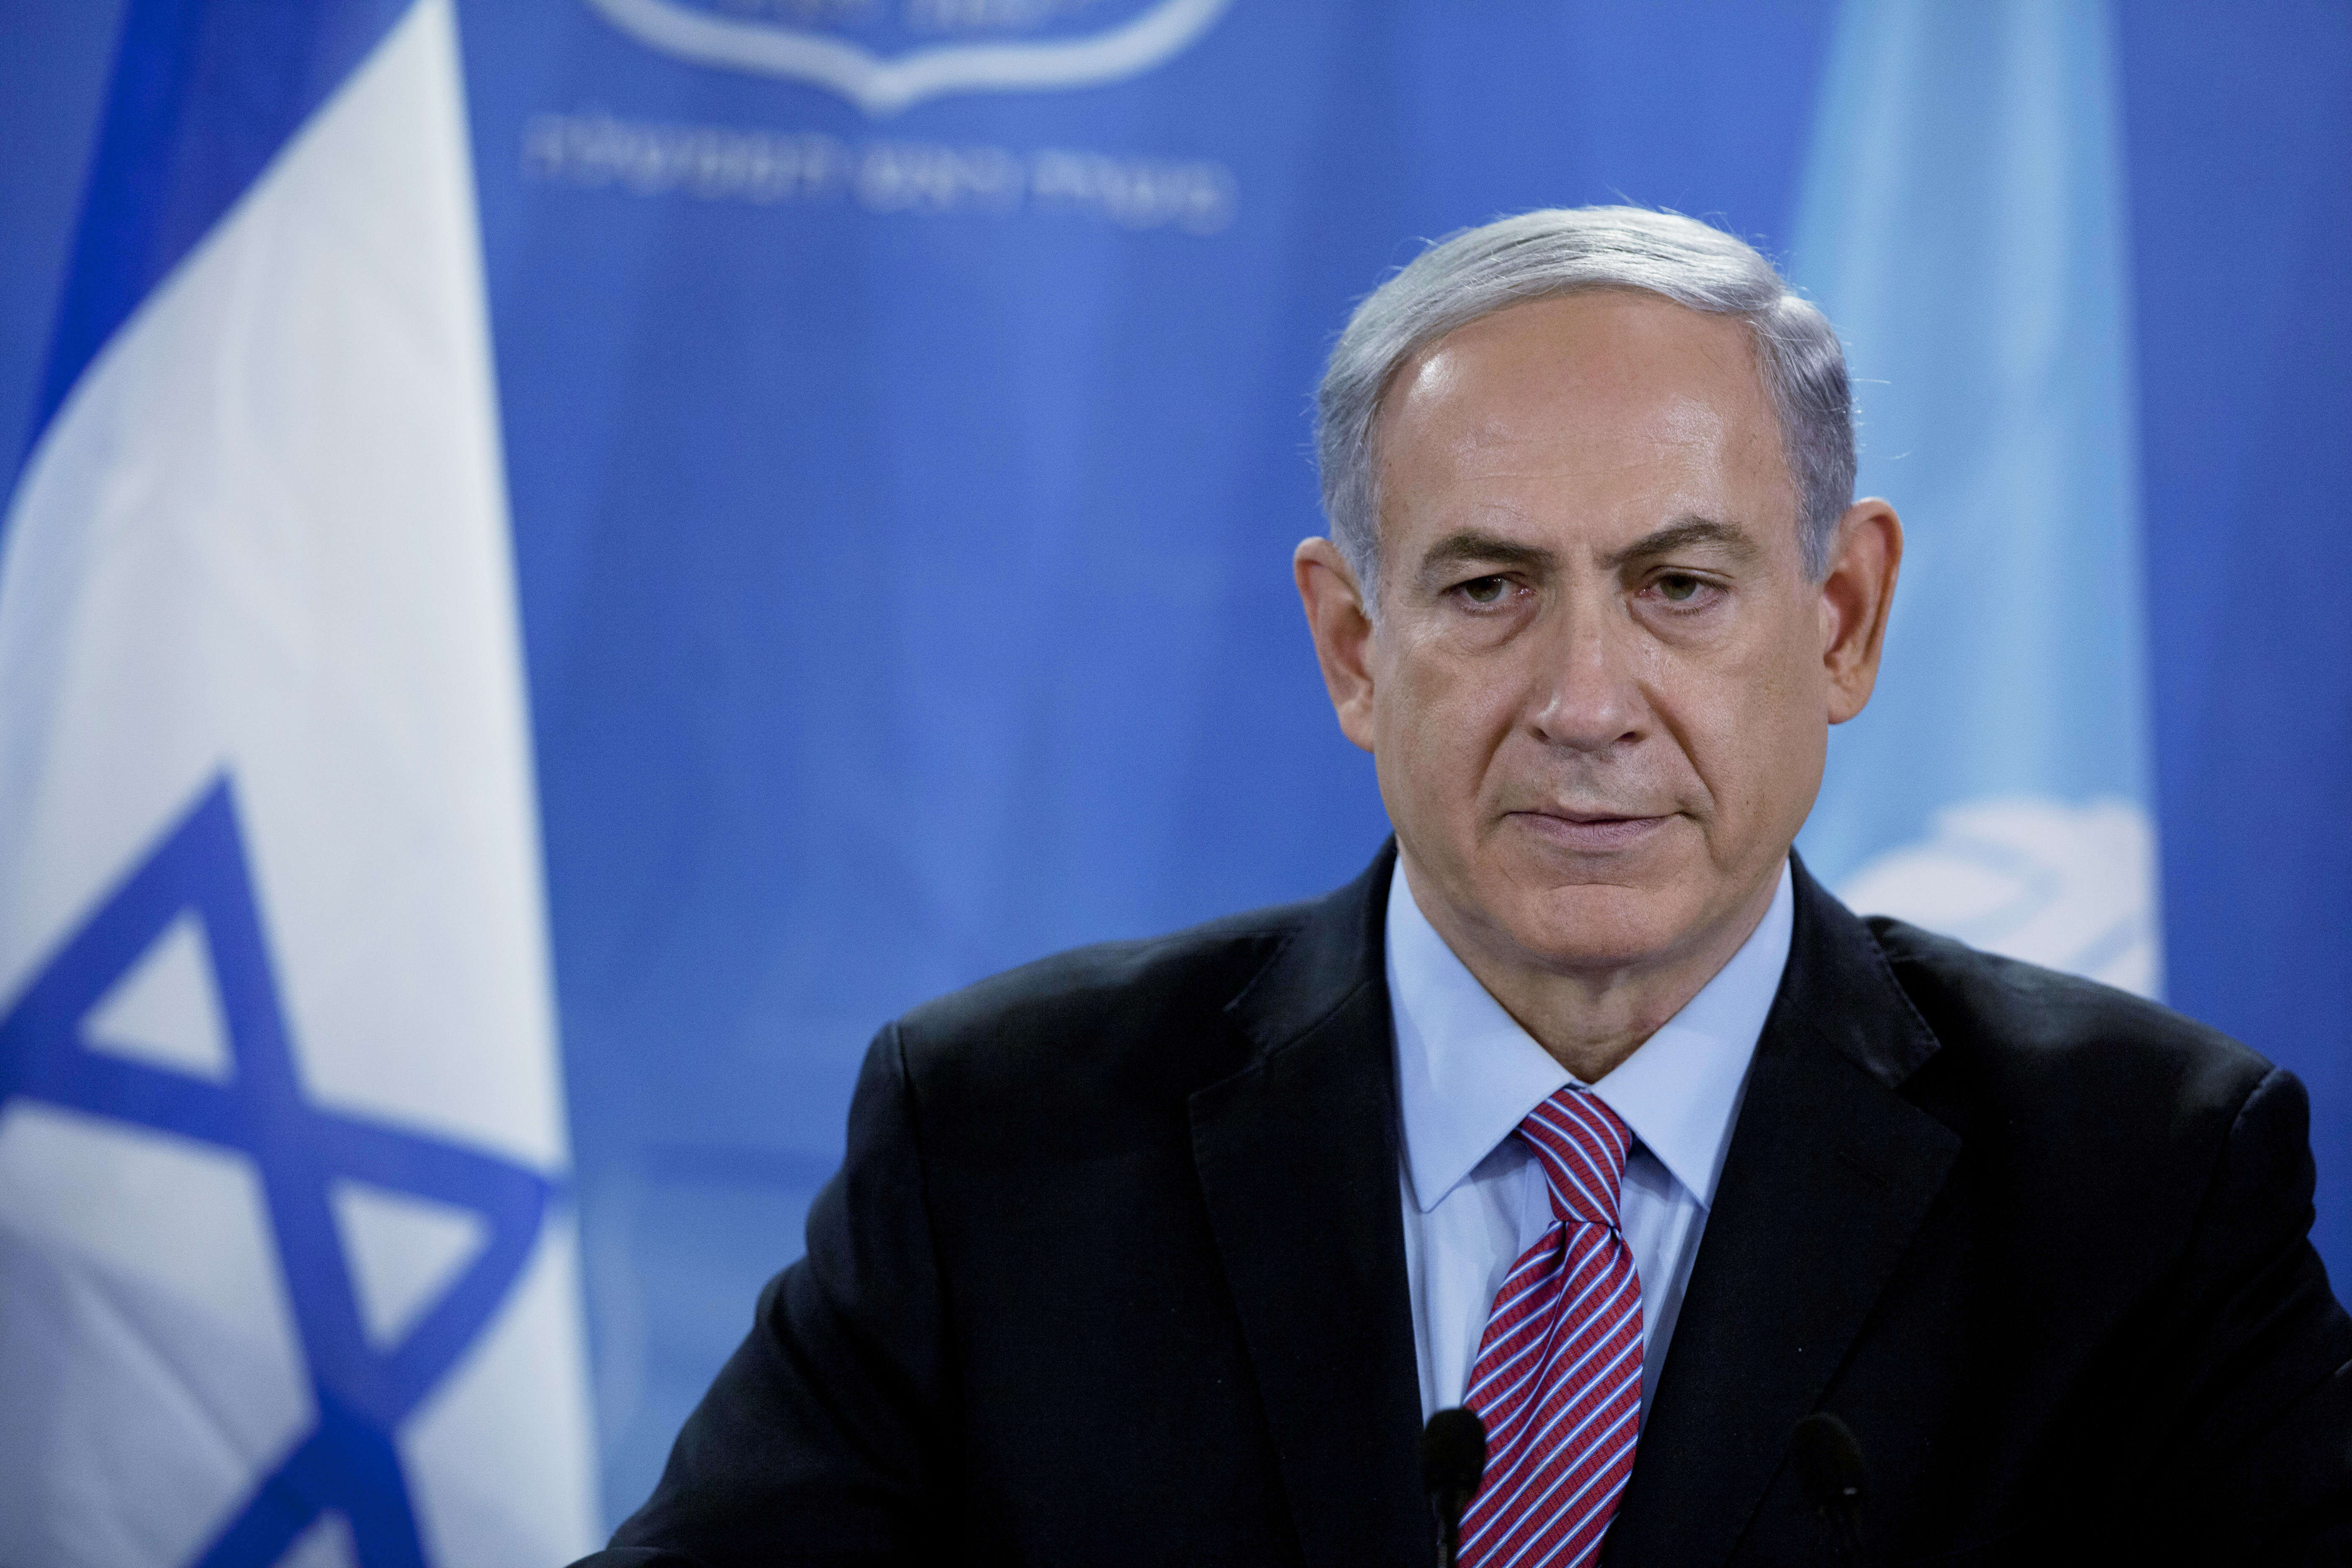 Israel PM Benjamin Netanyahu makes case on ISIS, Iran and Palestinians ...